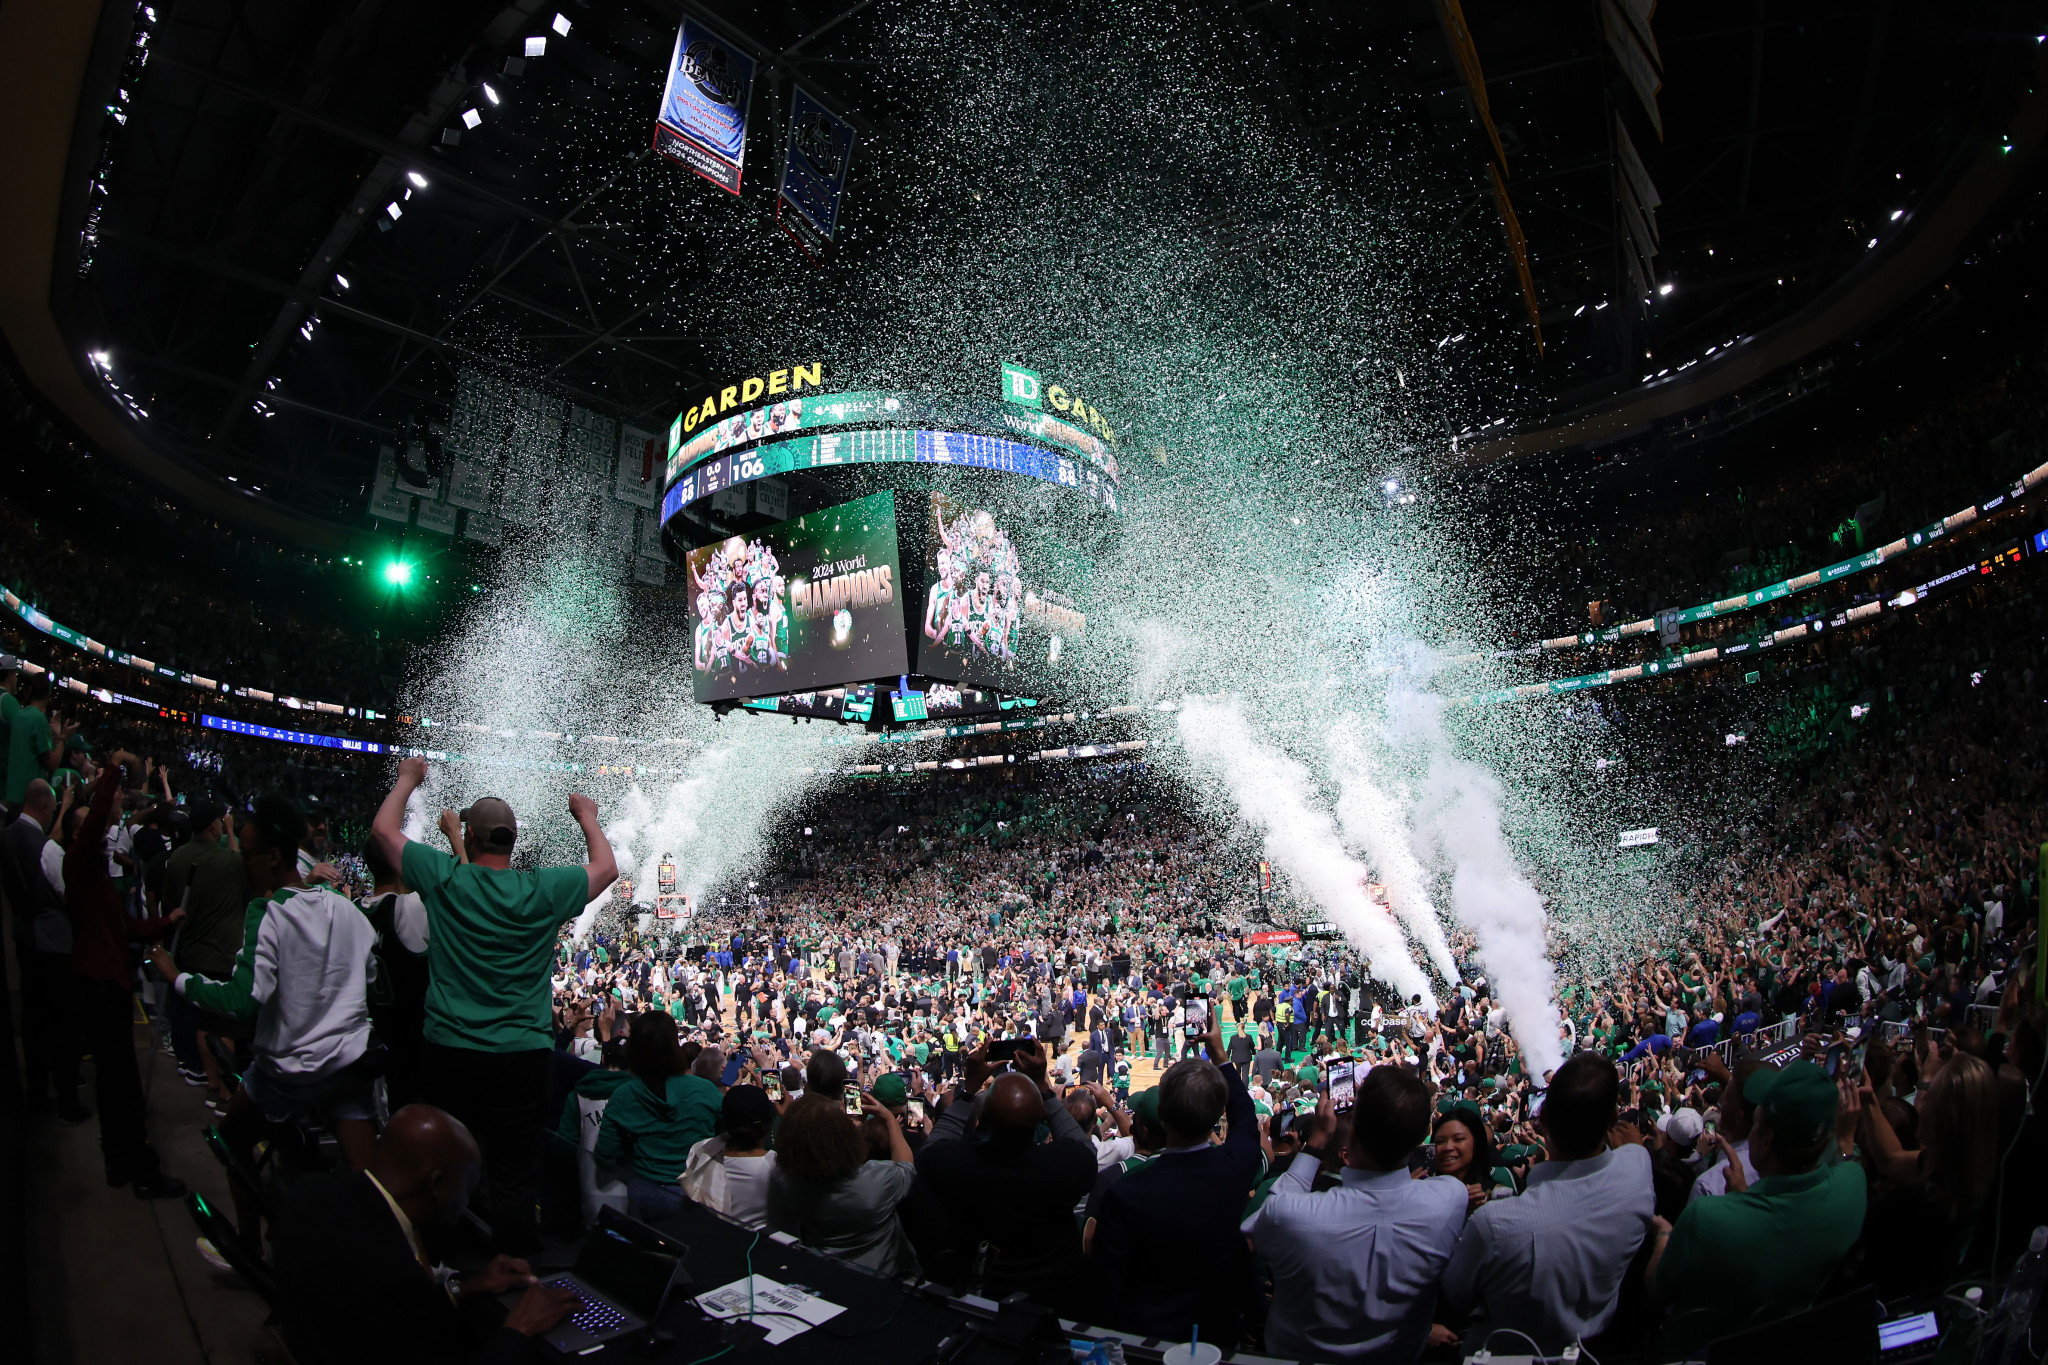 Celtics fans celebrate at TD Garden arena. GETTY IMAGES